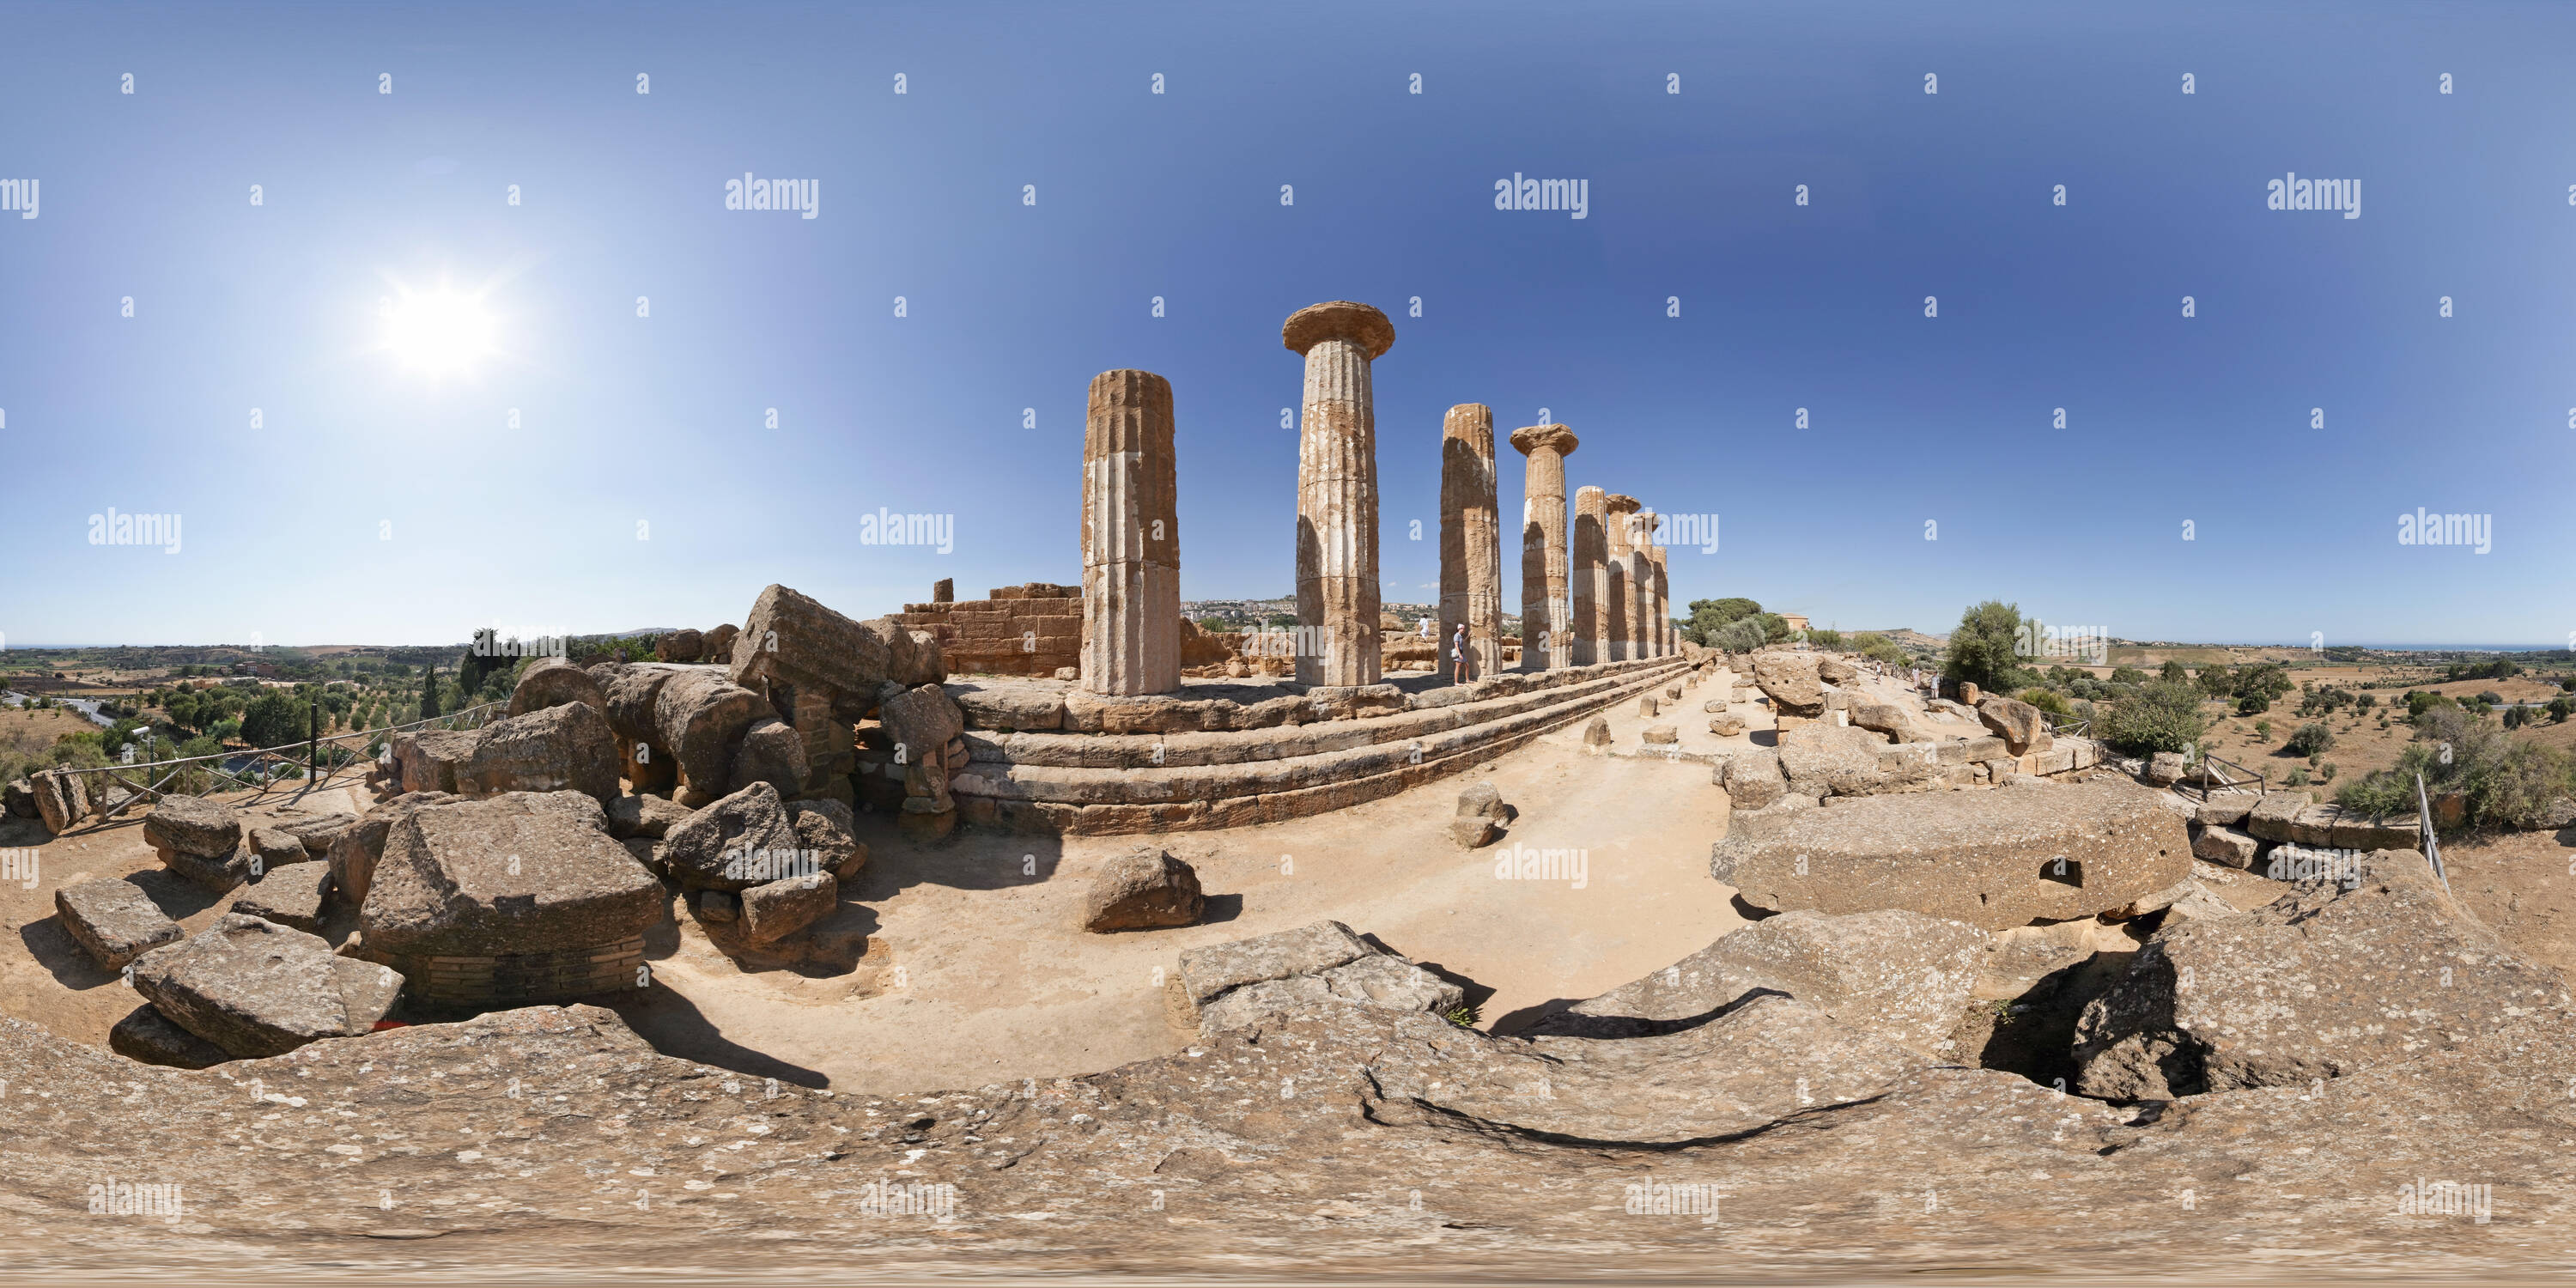 360 Grad Panorama Ansicht von Panorama der Tempel des Herkules im Tal der Tempel, Agrigento, Sizilien, Italien, 360 x 180 Grad equirectangular Bild